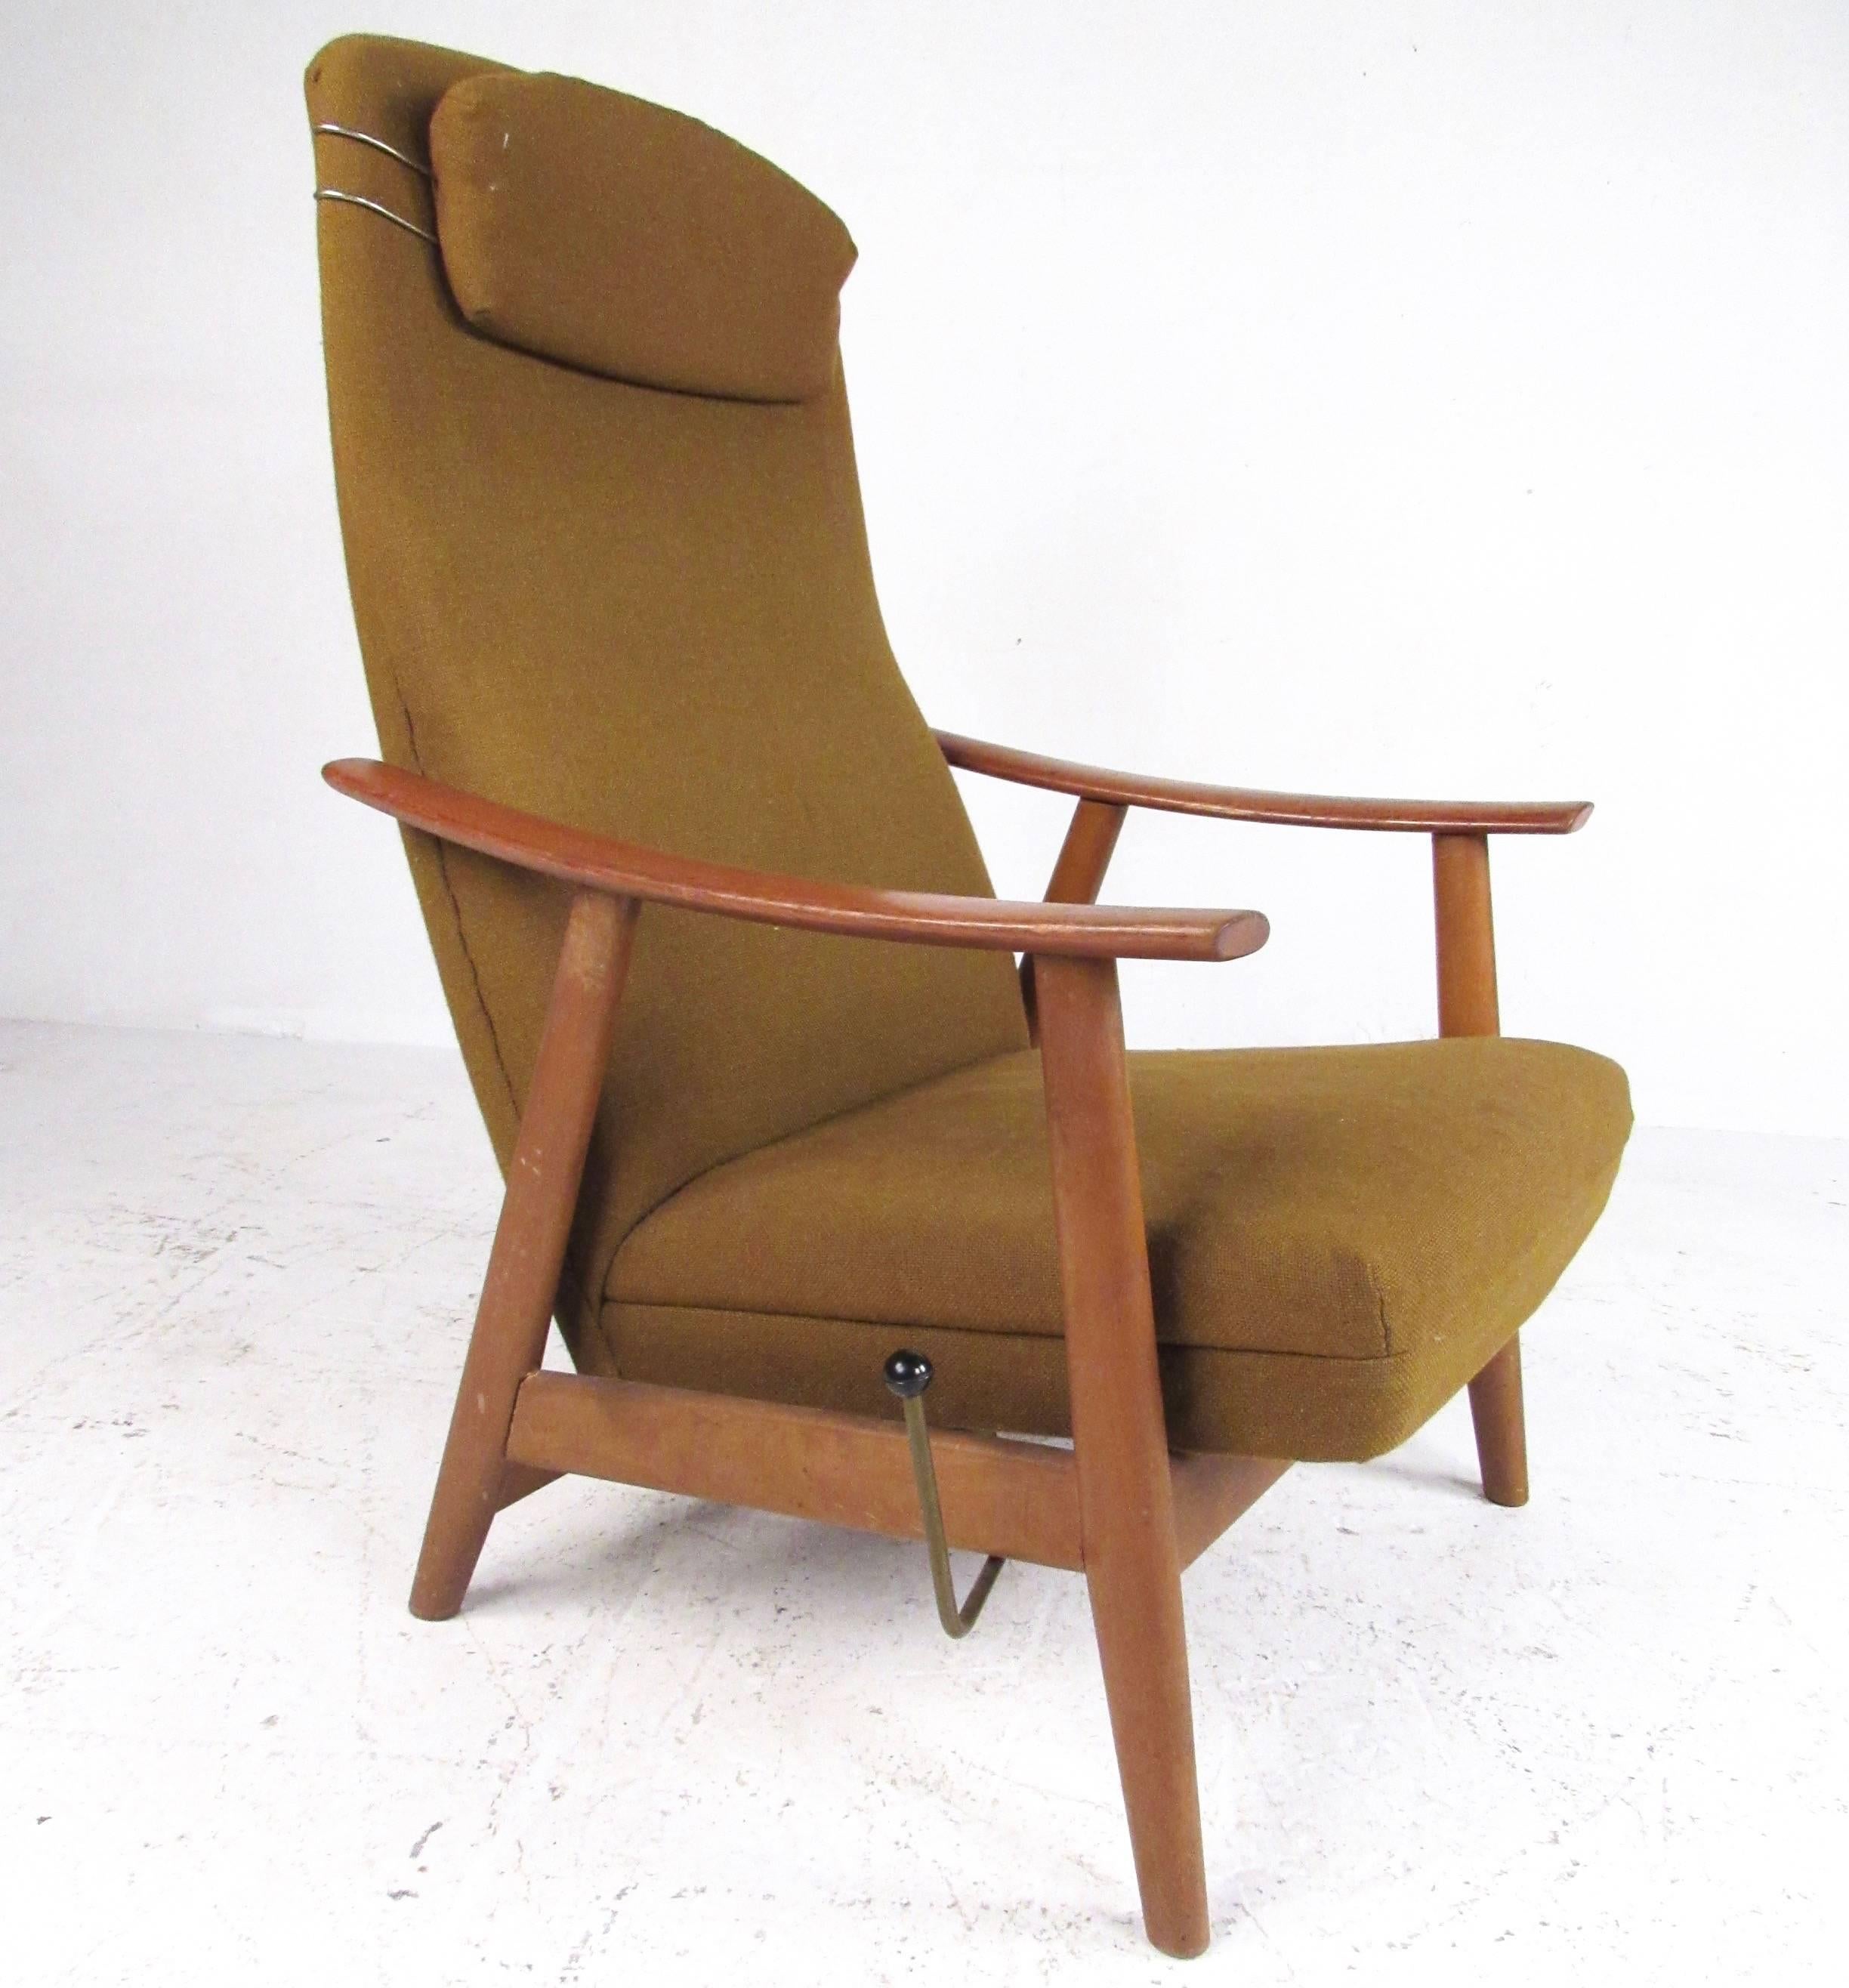 Dieser schöne Mid-Century Modern Loungesessel verfügt über einen Rahmen aus Teakholz und einen gepolsterten Sitz mit hoher Rückenlehne. Die verstellbare Liegeposition stellt den Stuhl in verschiedenen Winkeln für optimalen Komfort ein. Eine